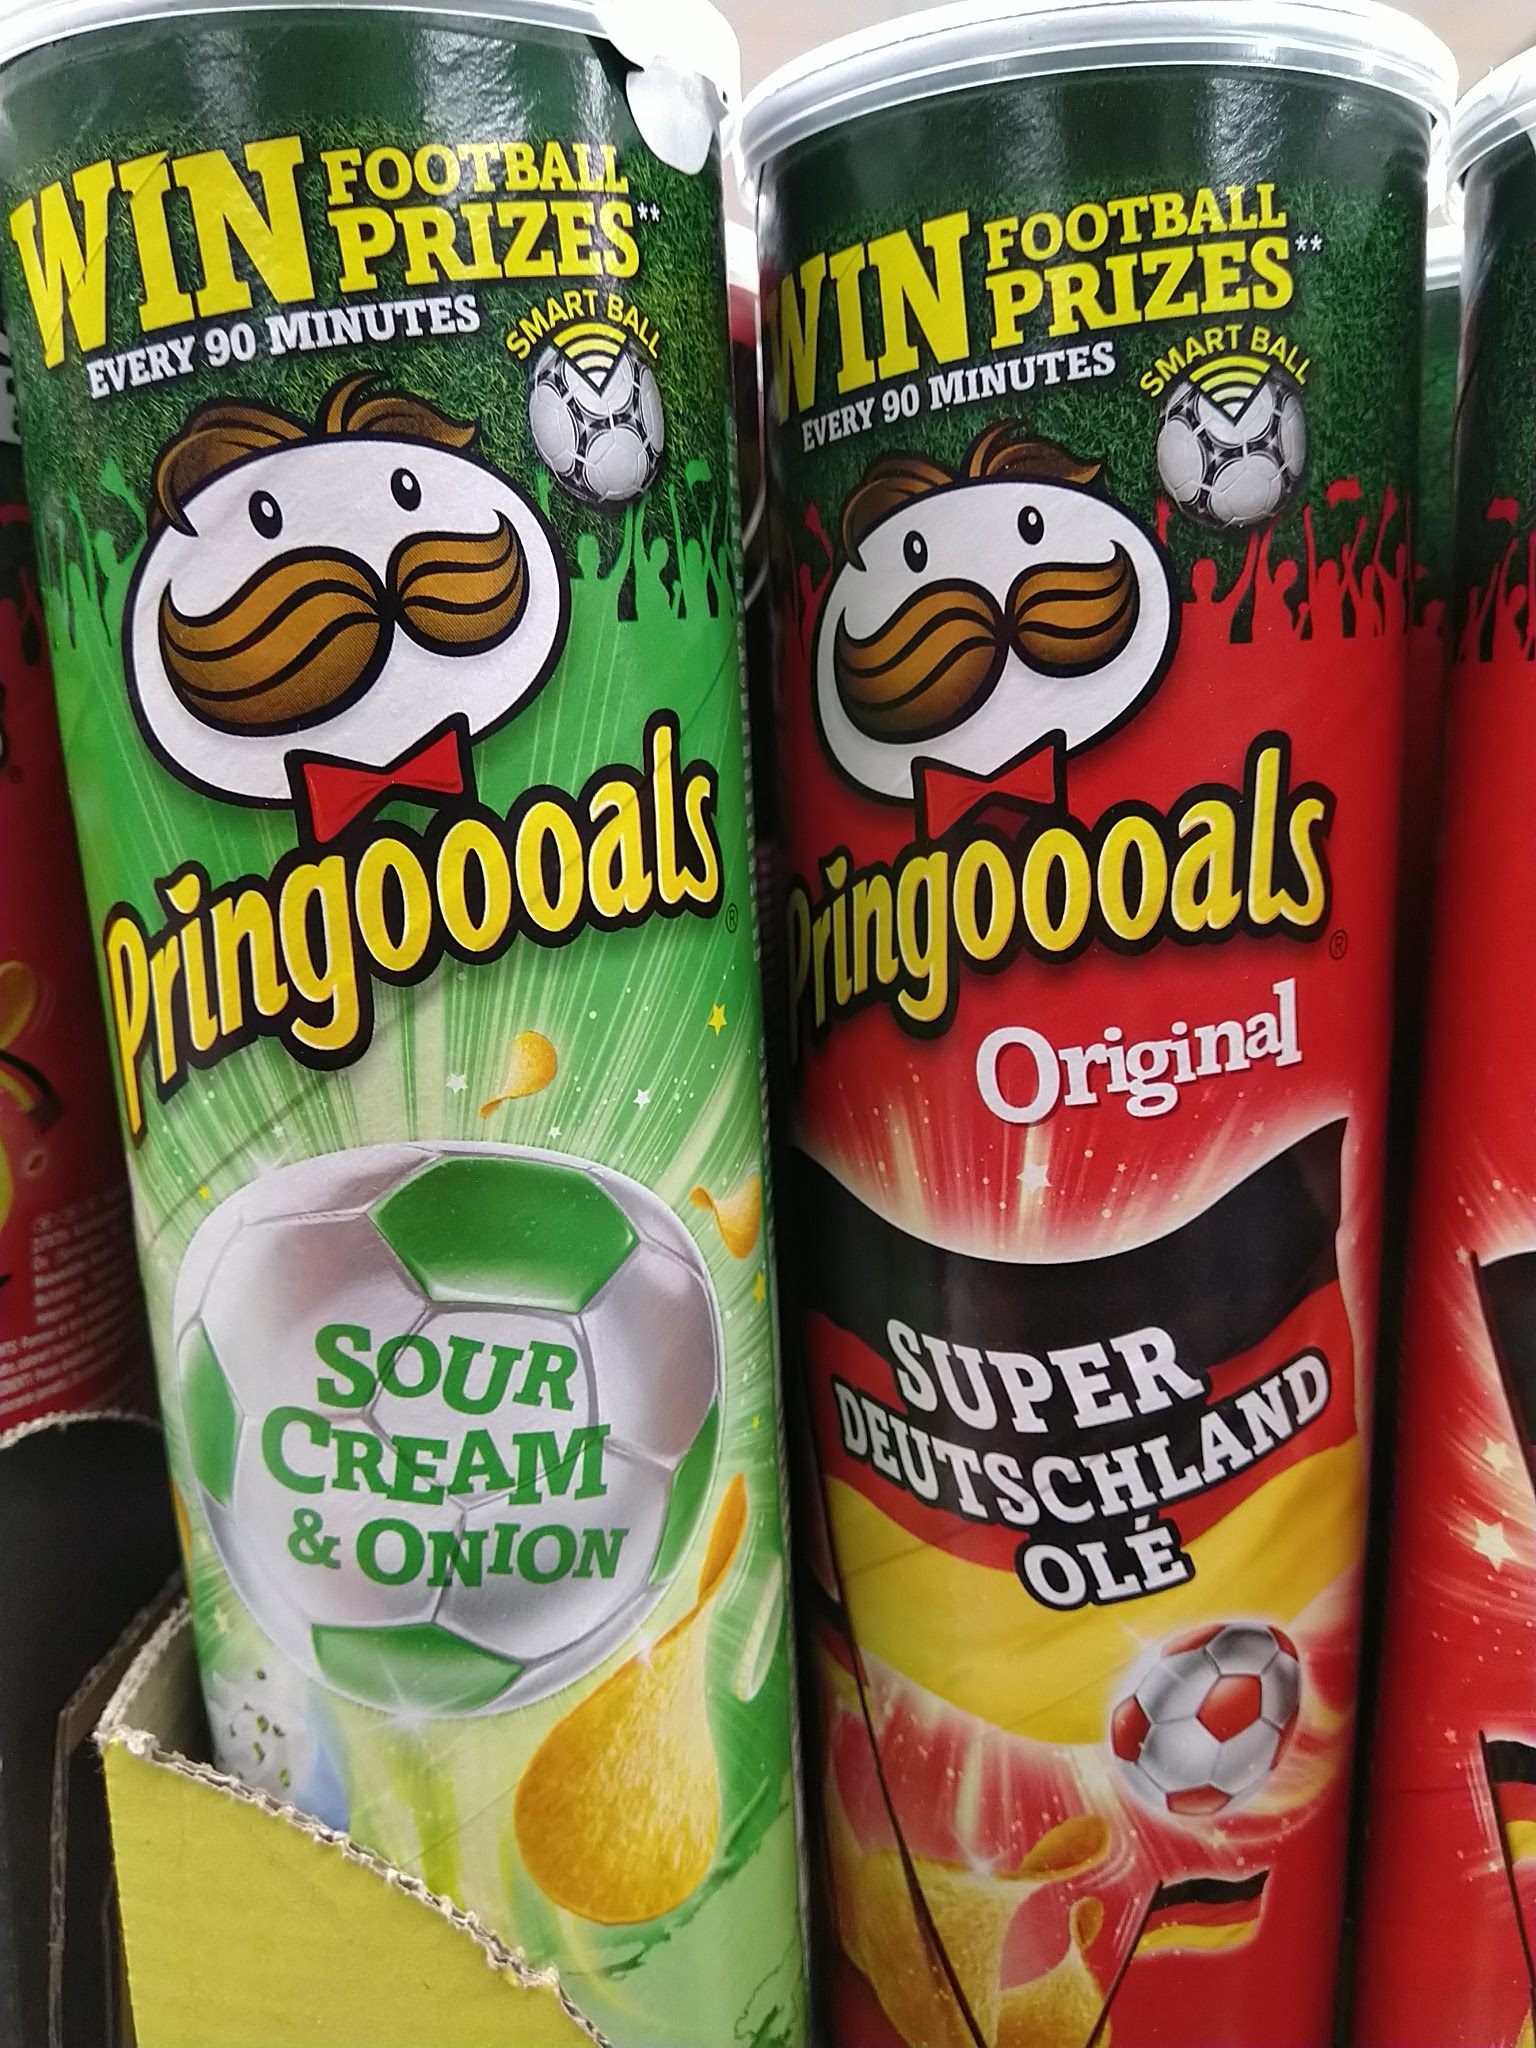 Pringles - Pringoooals